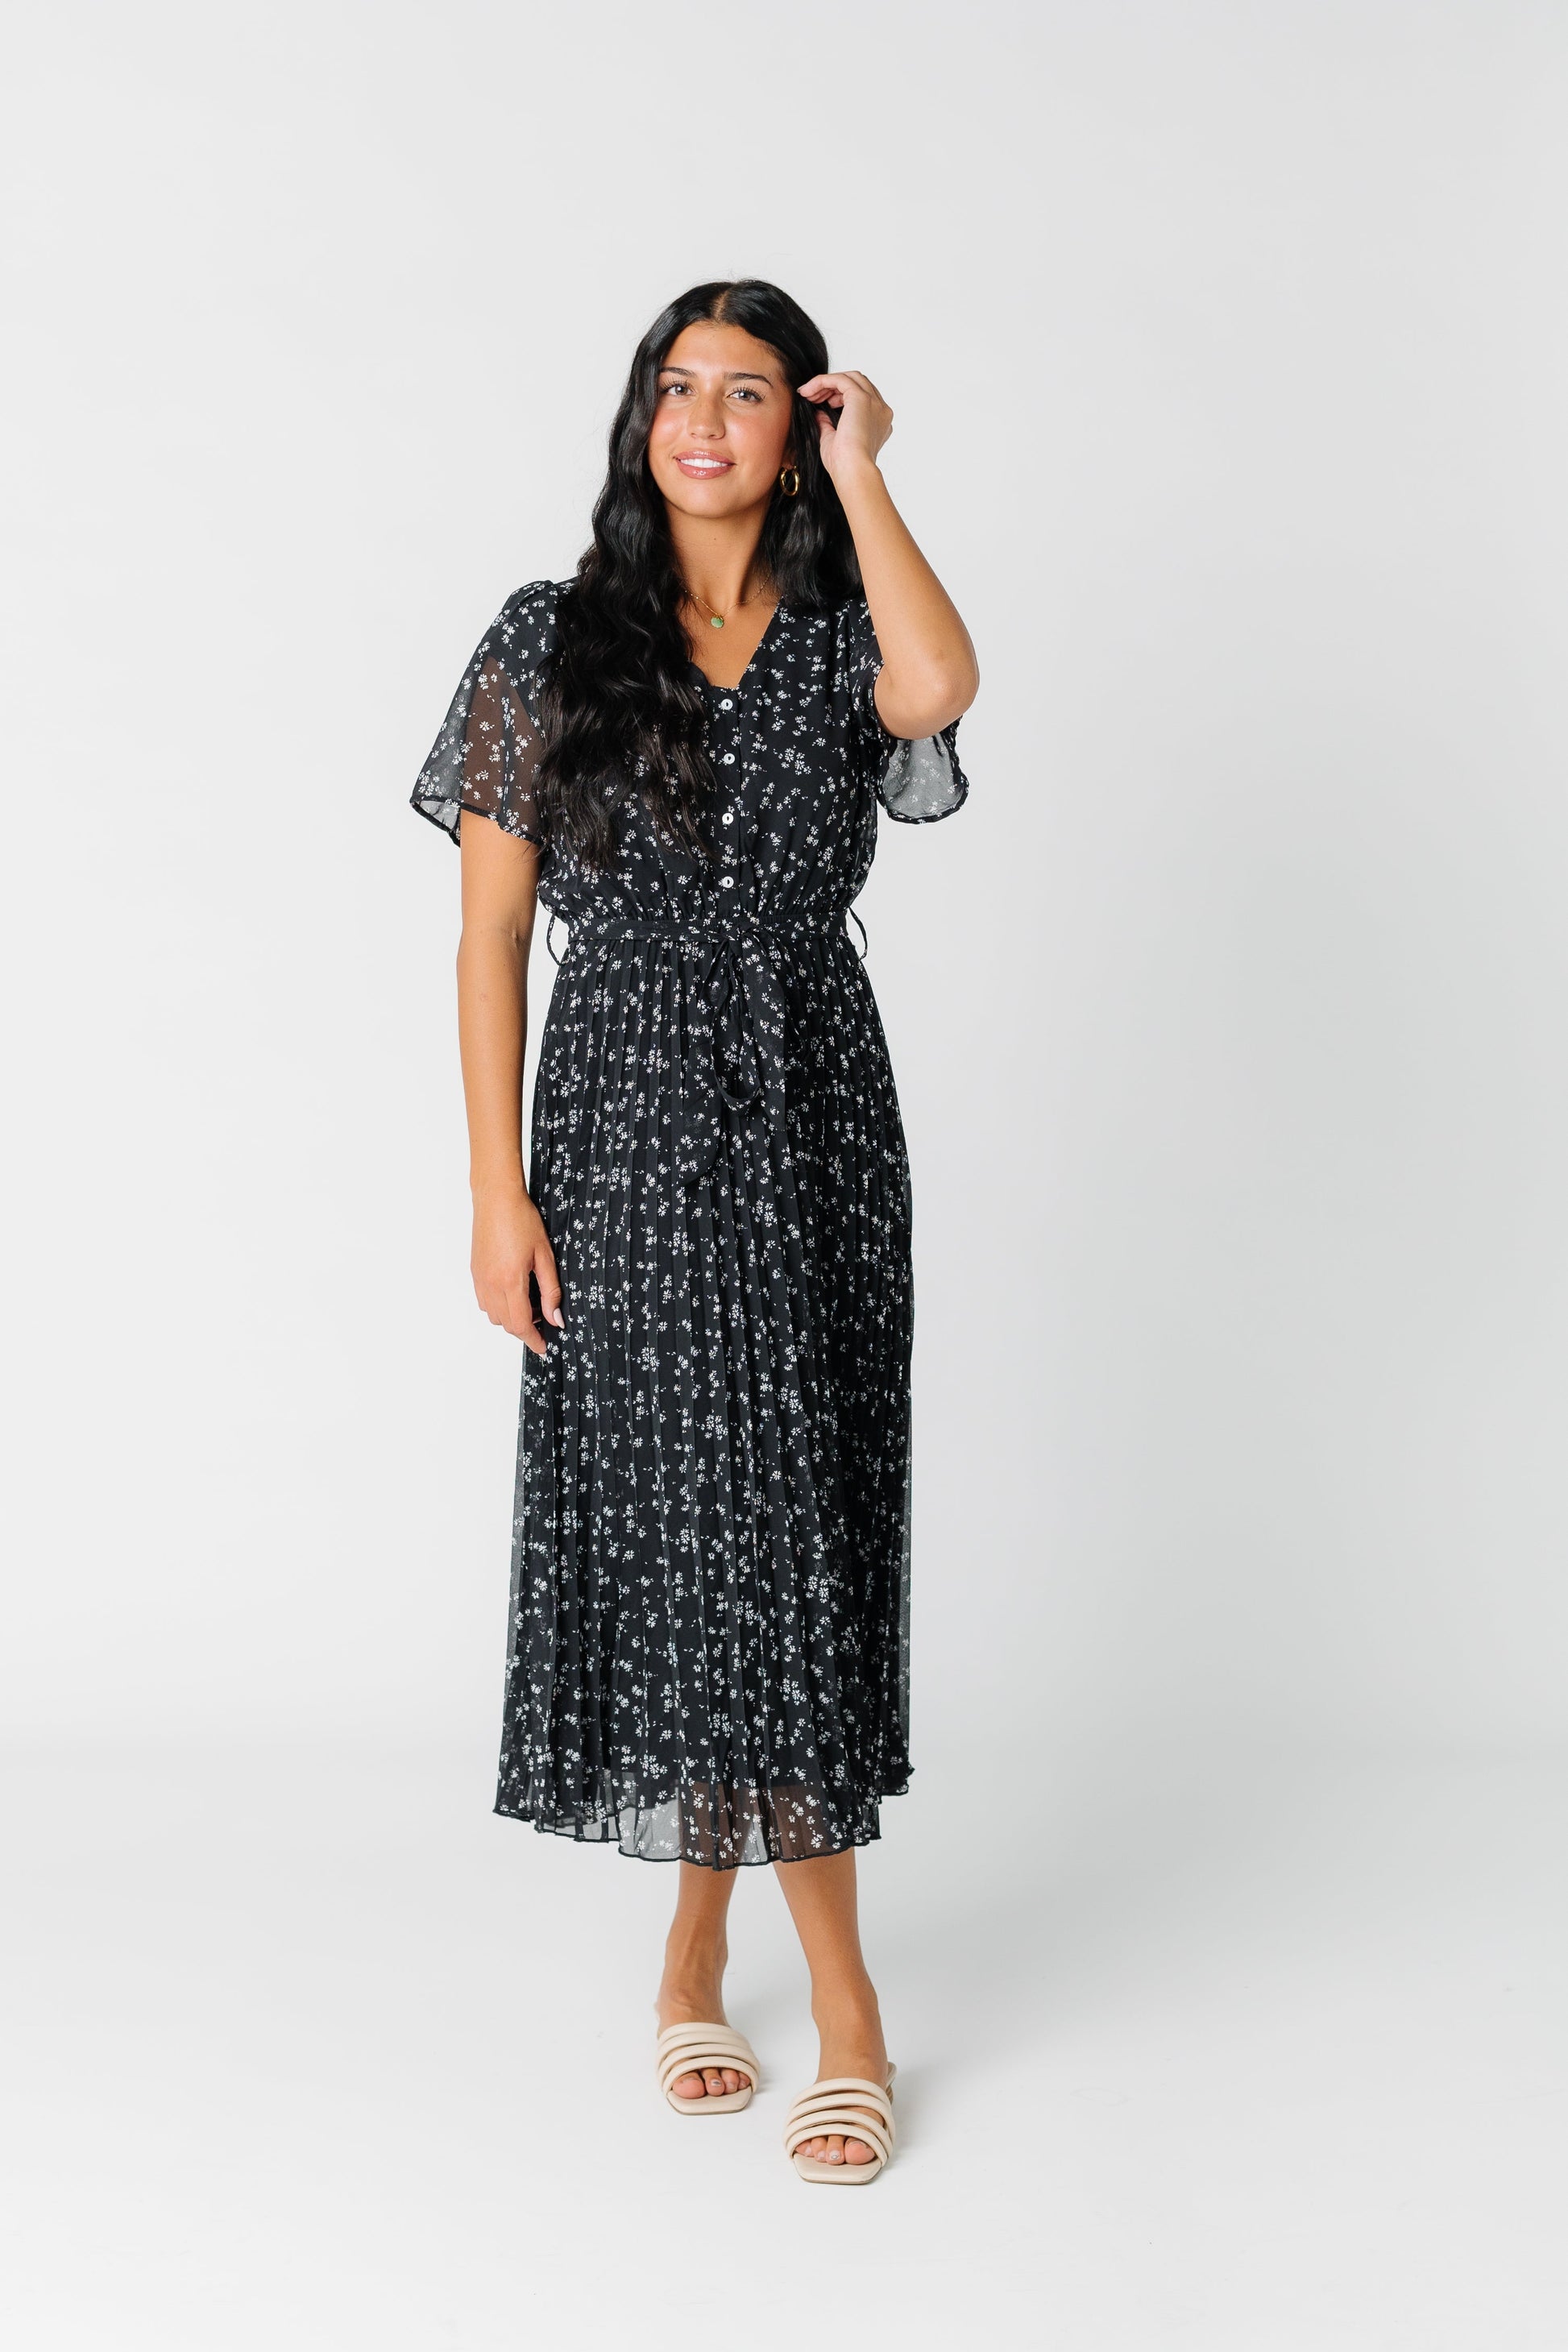 V-Neck Floral Dress - Black WOMEN'S DRESS Polagram 